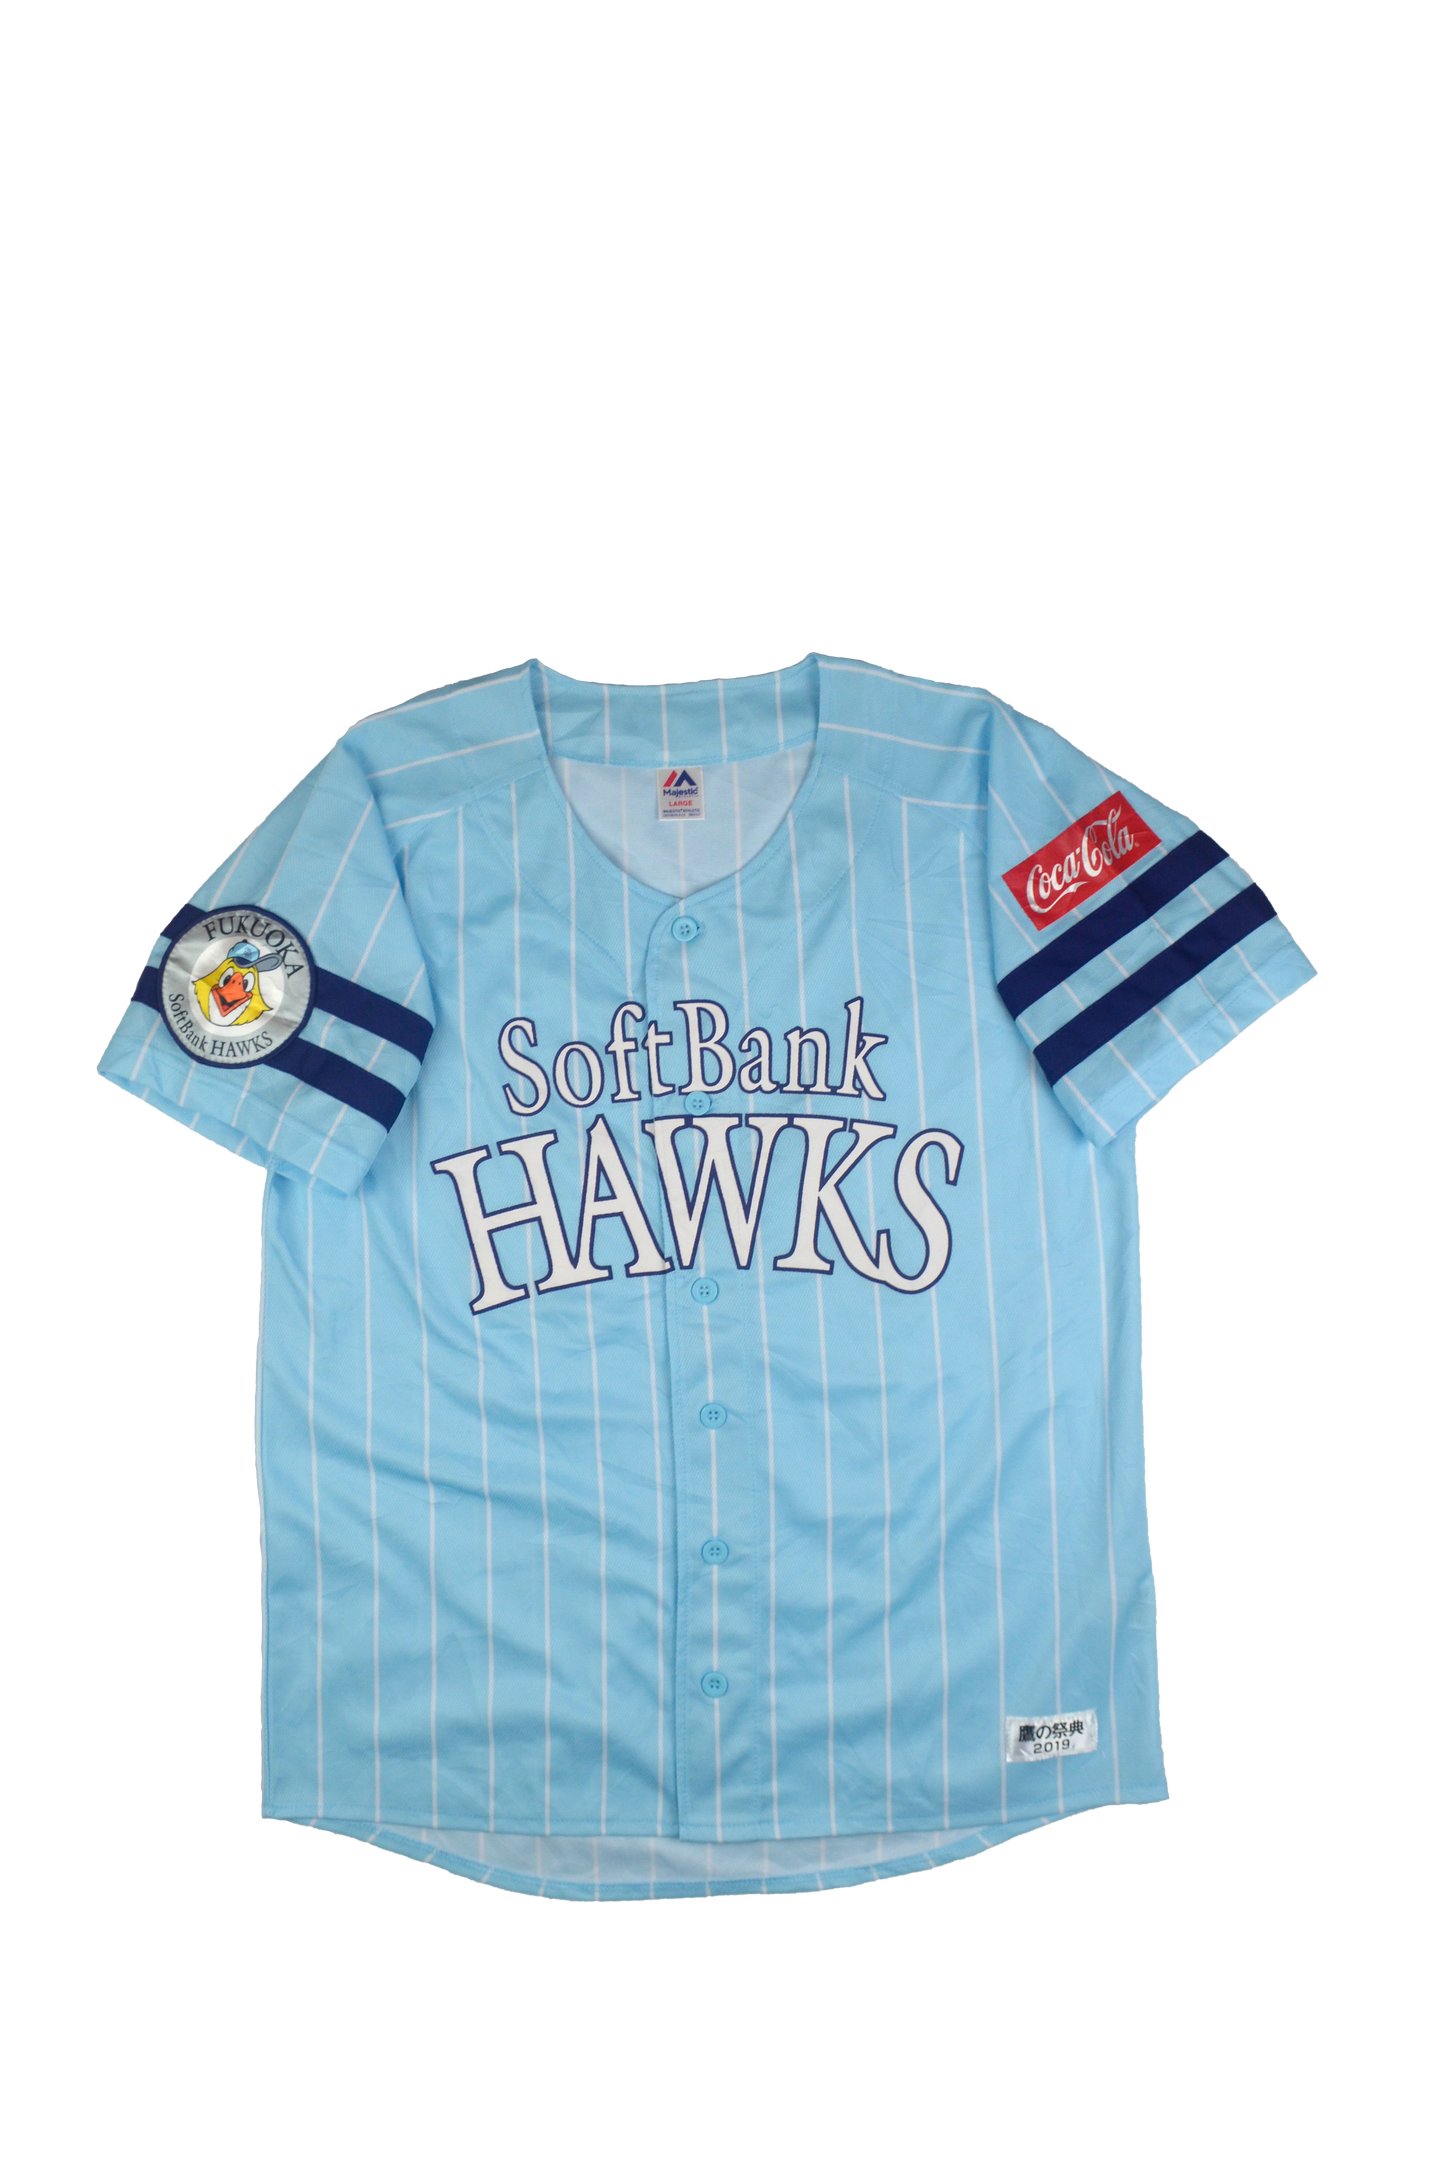 Fukuoka SoftBank Hawks 3rd kit 2019